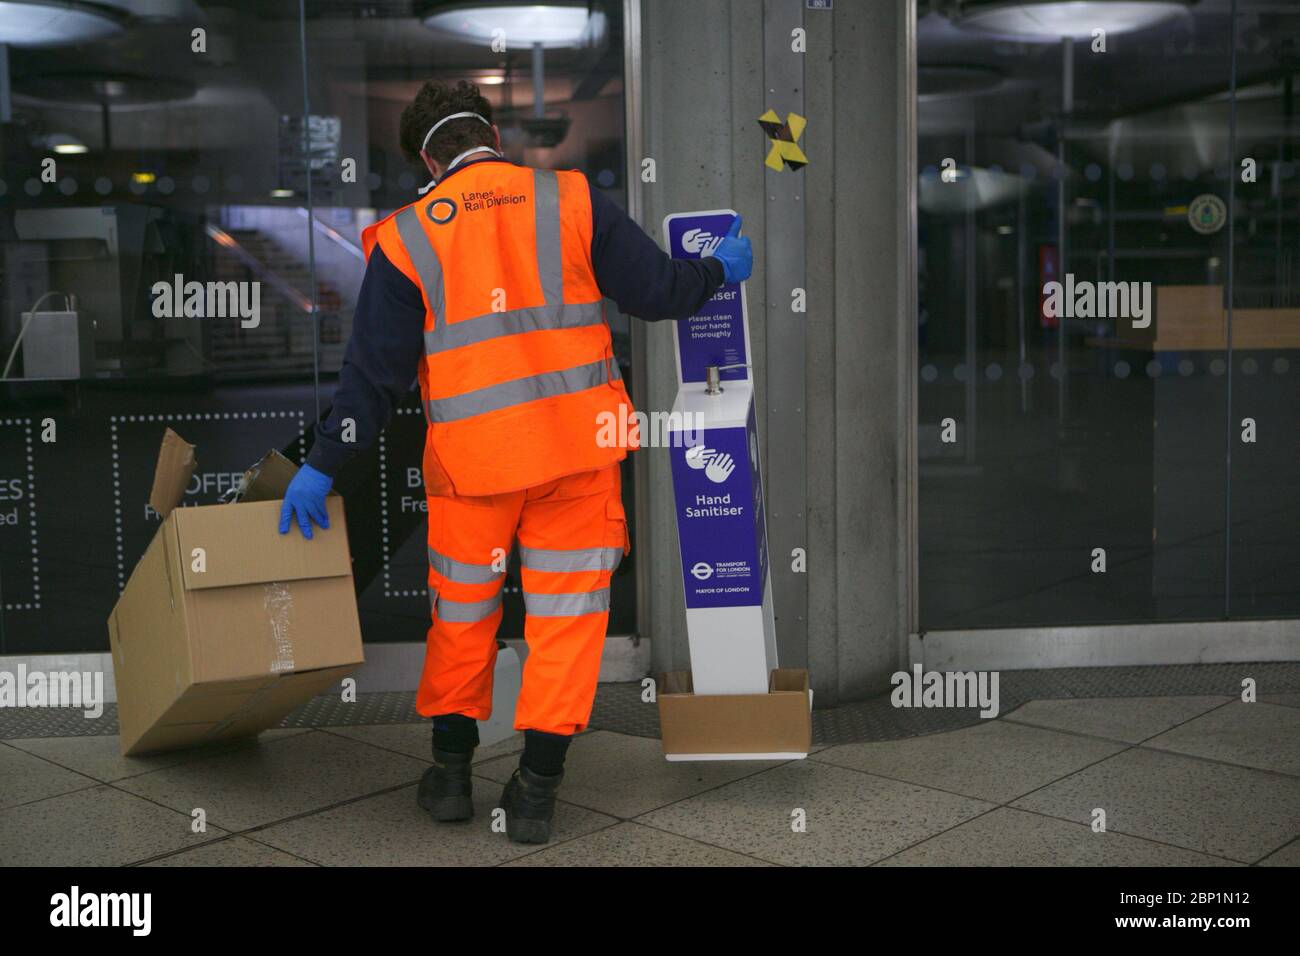 Transport pour les entrepreneurs de Londres installer des stations de désinfectant pour les mains à l'intérieur de la station de métro Westminster pour les voyageurs pendant la pandémie du coronavirus. Banque D'Images